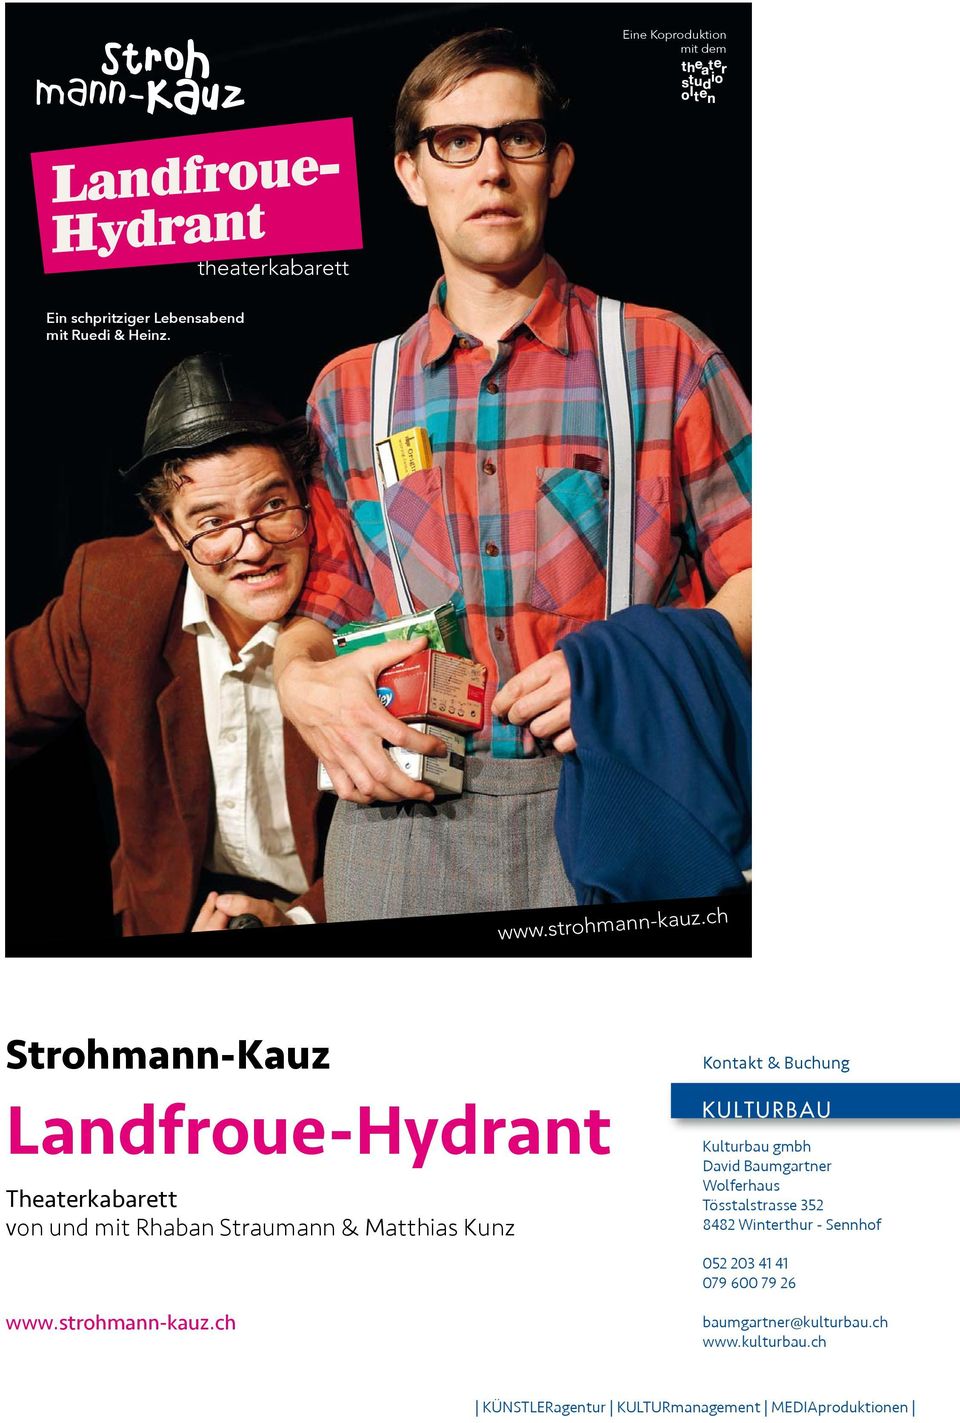 www.strohmann-kauz.